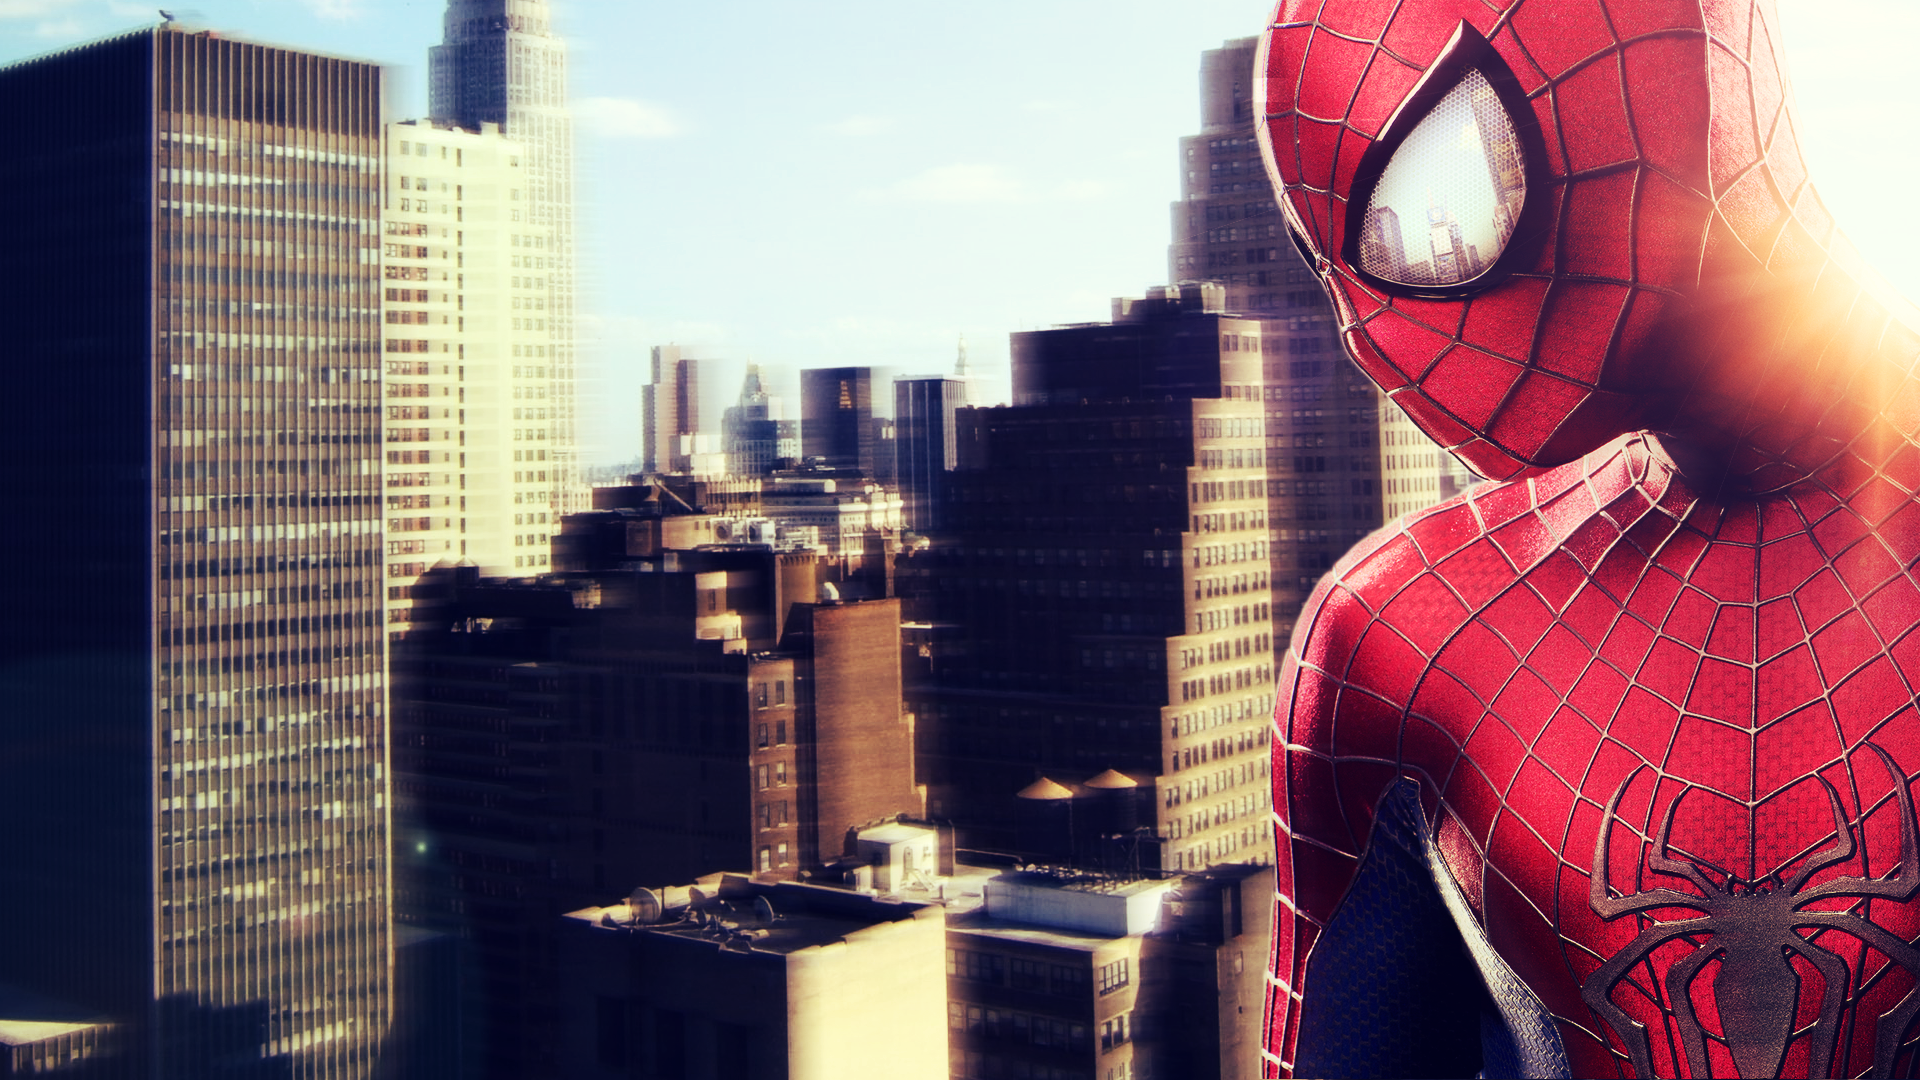 Самого нового человека паука. Spider-man: Shattered Dimensions. Спайдер мен шатер деймейшенс. Новый человек паук 1. Человек паук город.